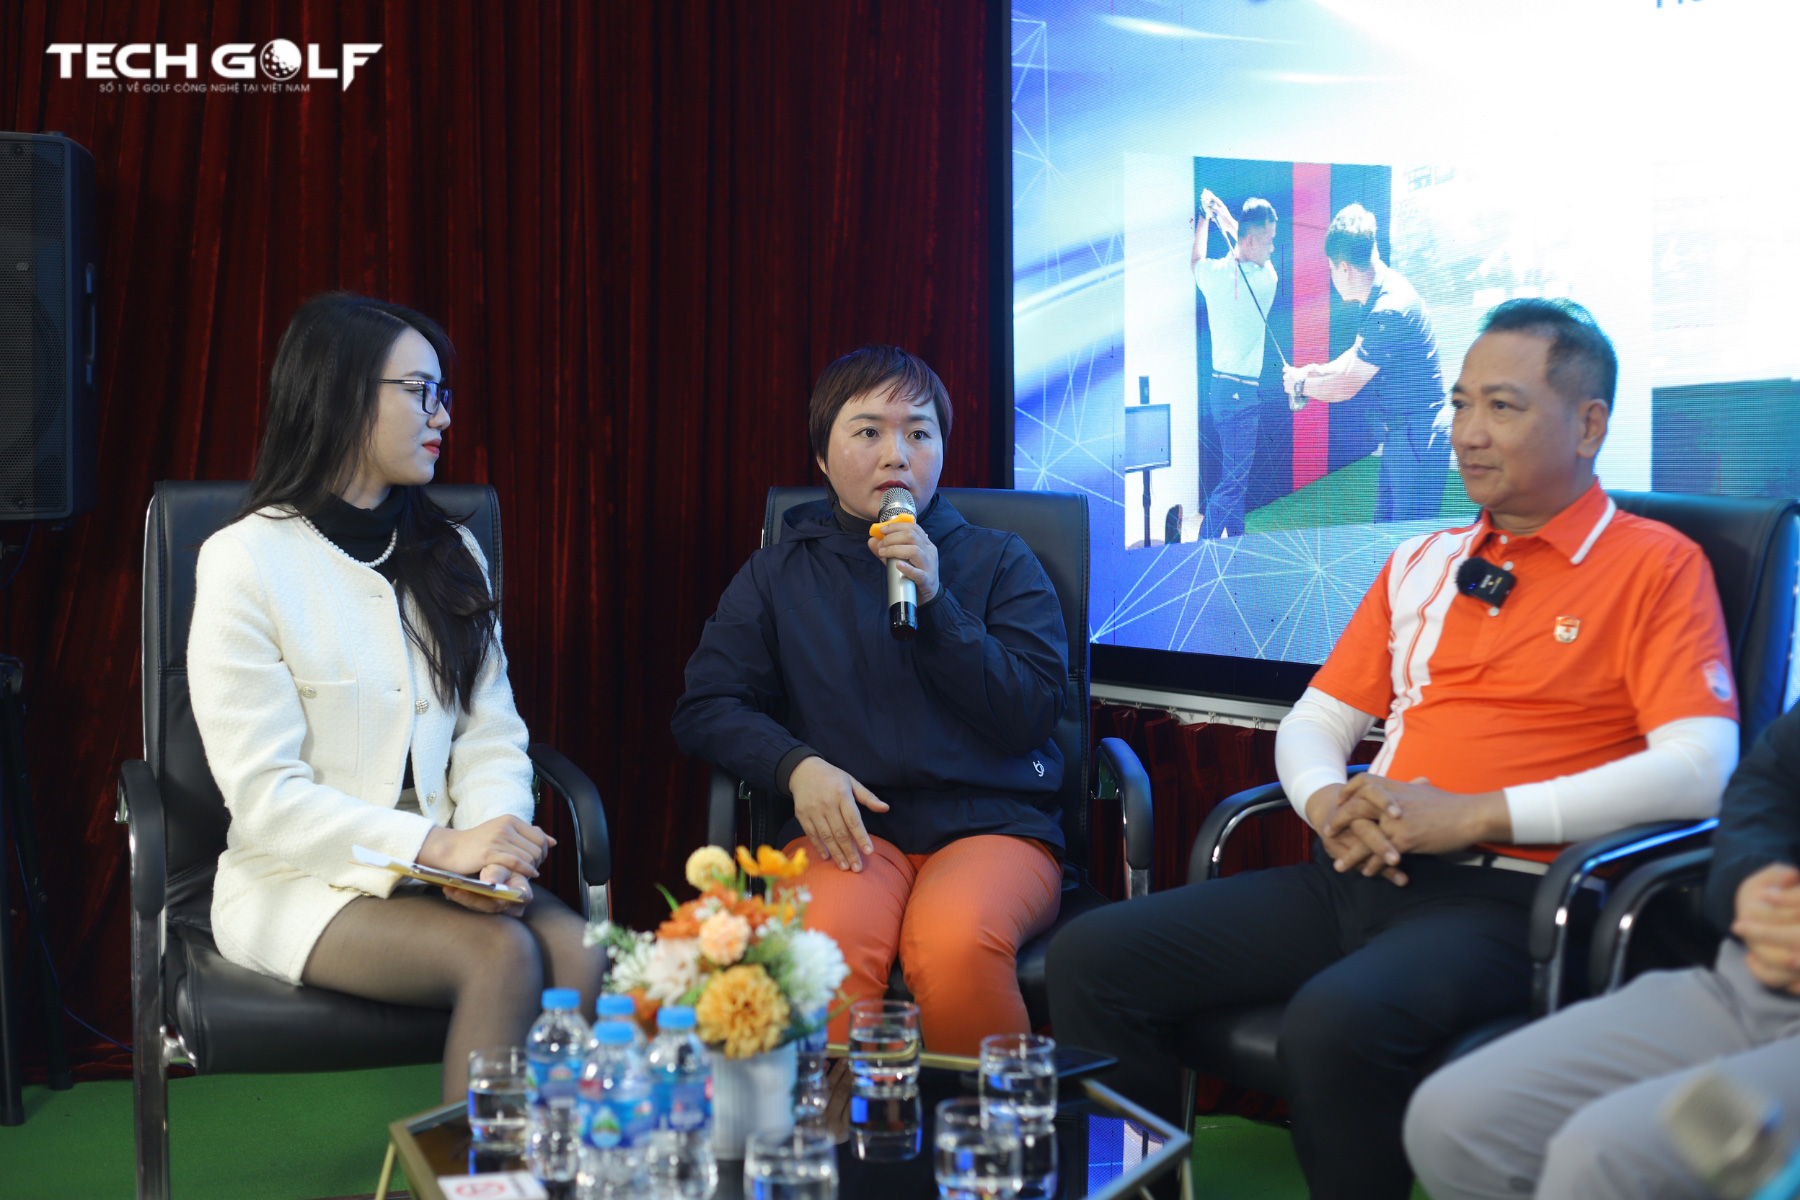 HLV Bùi Thị Thoa chia sẻ về những trải nghiệm khi dạy golf trong phòng 3D